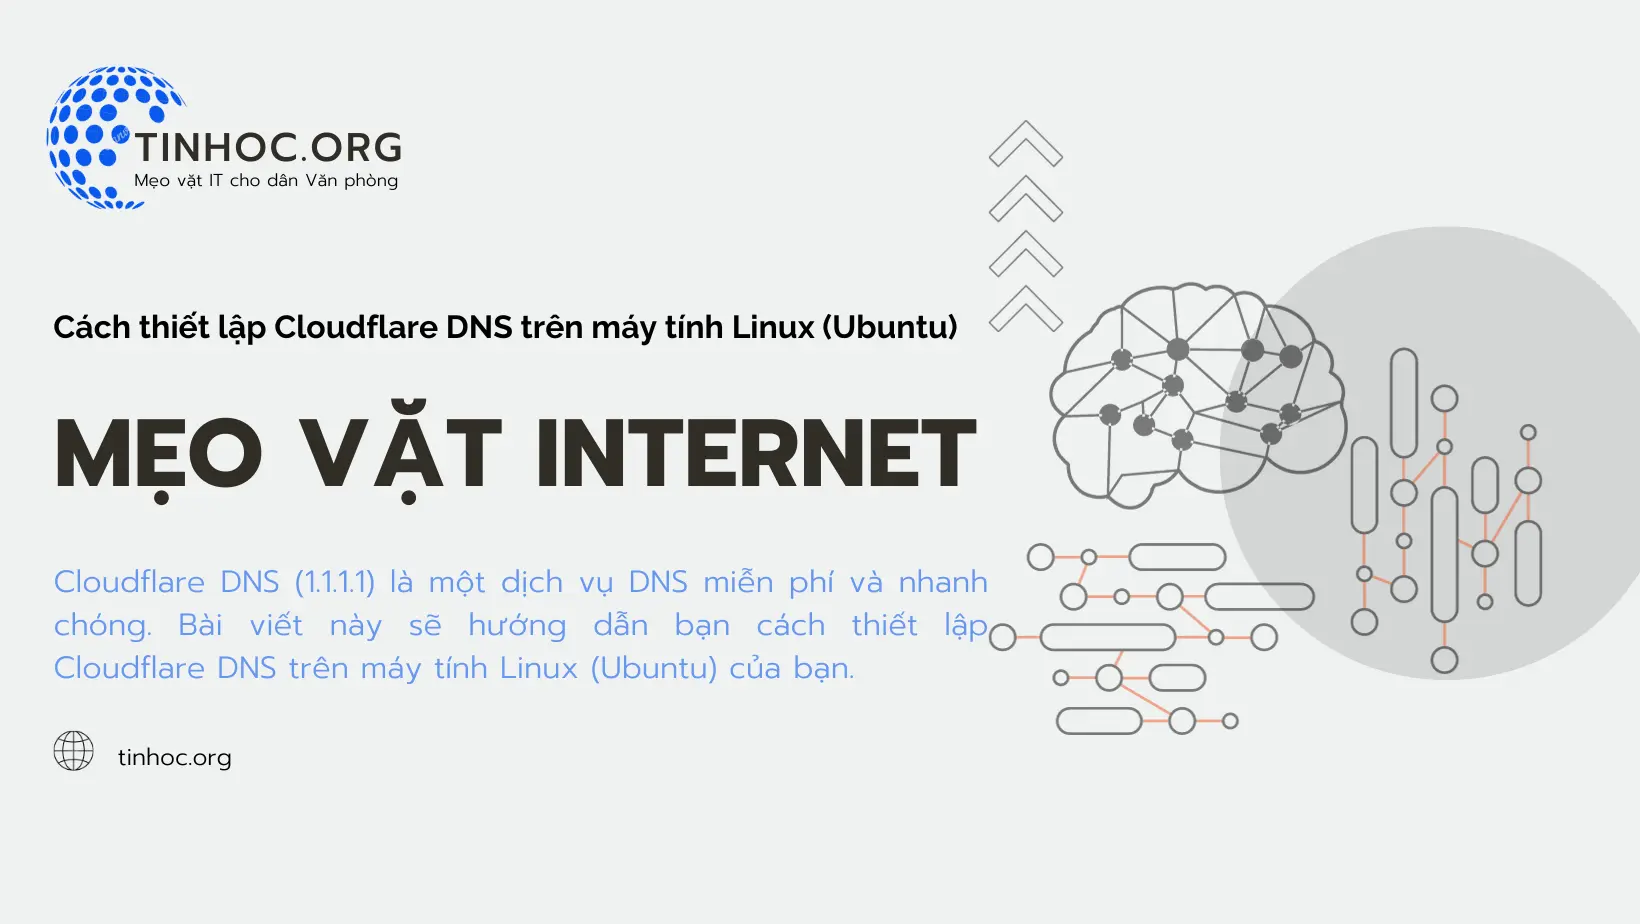 Hướng dẫn chi tiết cách thiết lập Cloudflare DNS trên máy tính Linux (Ubuntu), một dịch vụ DNS miễn phí, nhanh chóng và an toàn.